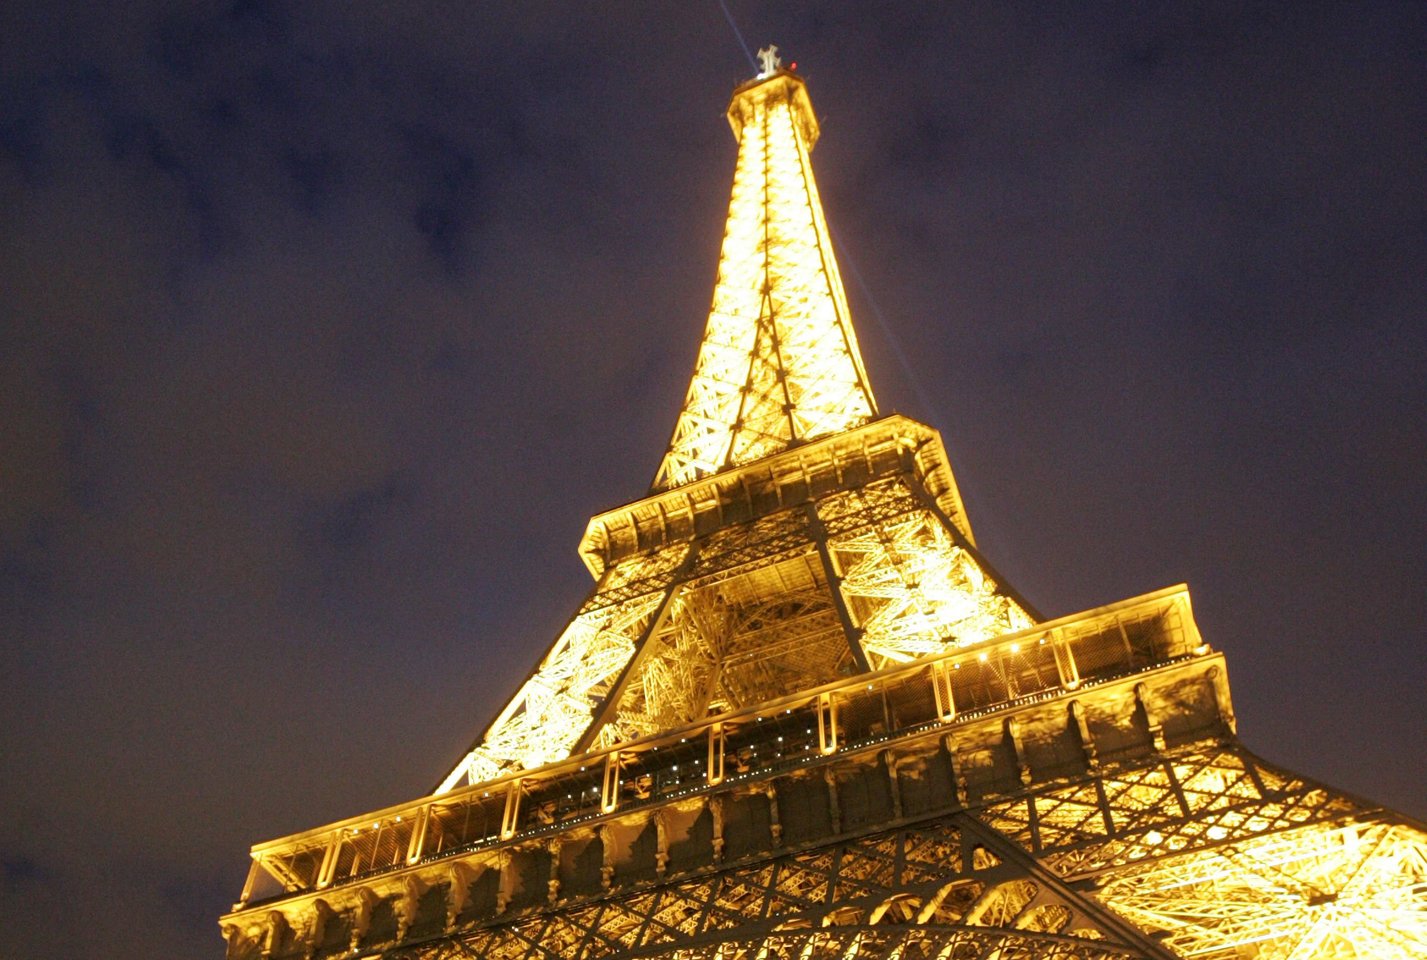 1889 m. Marso lauke Paryžiuje baigtas statyti Eiffelio bokštas – tuo metu aukščiausias statinys pasaulyje. Jo statyba prasidėjo 1887 m. sausio 28 d. 300 m aukščio bokštas buvo skirtas Paryžiaus pasaulinei parodai. Dabar jis yra turistų labiausiai lankomas pasaulio objektas.<br>A.Barzdžiaus nuotr.